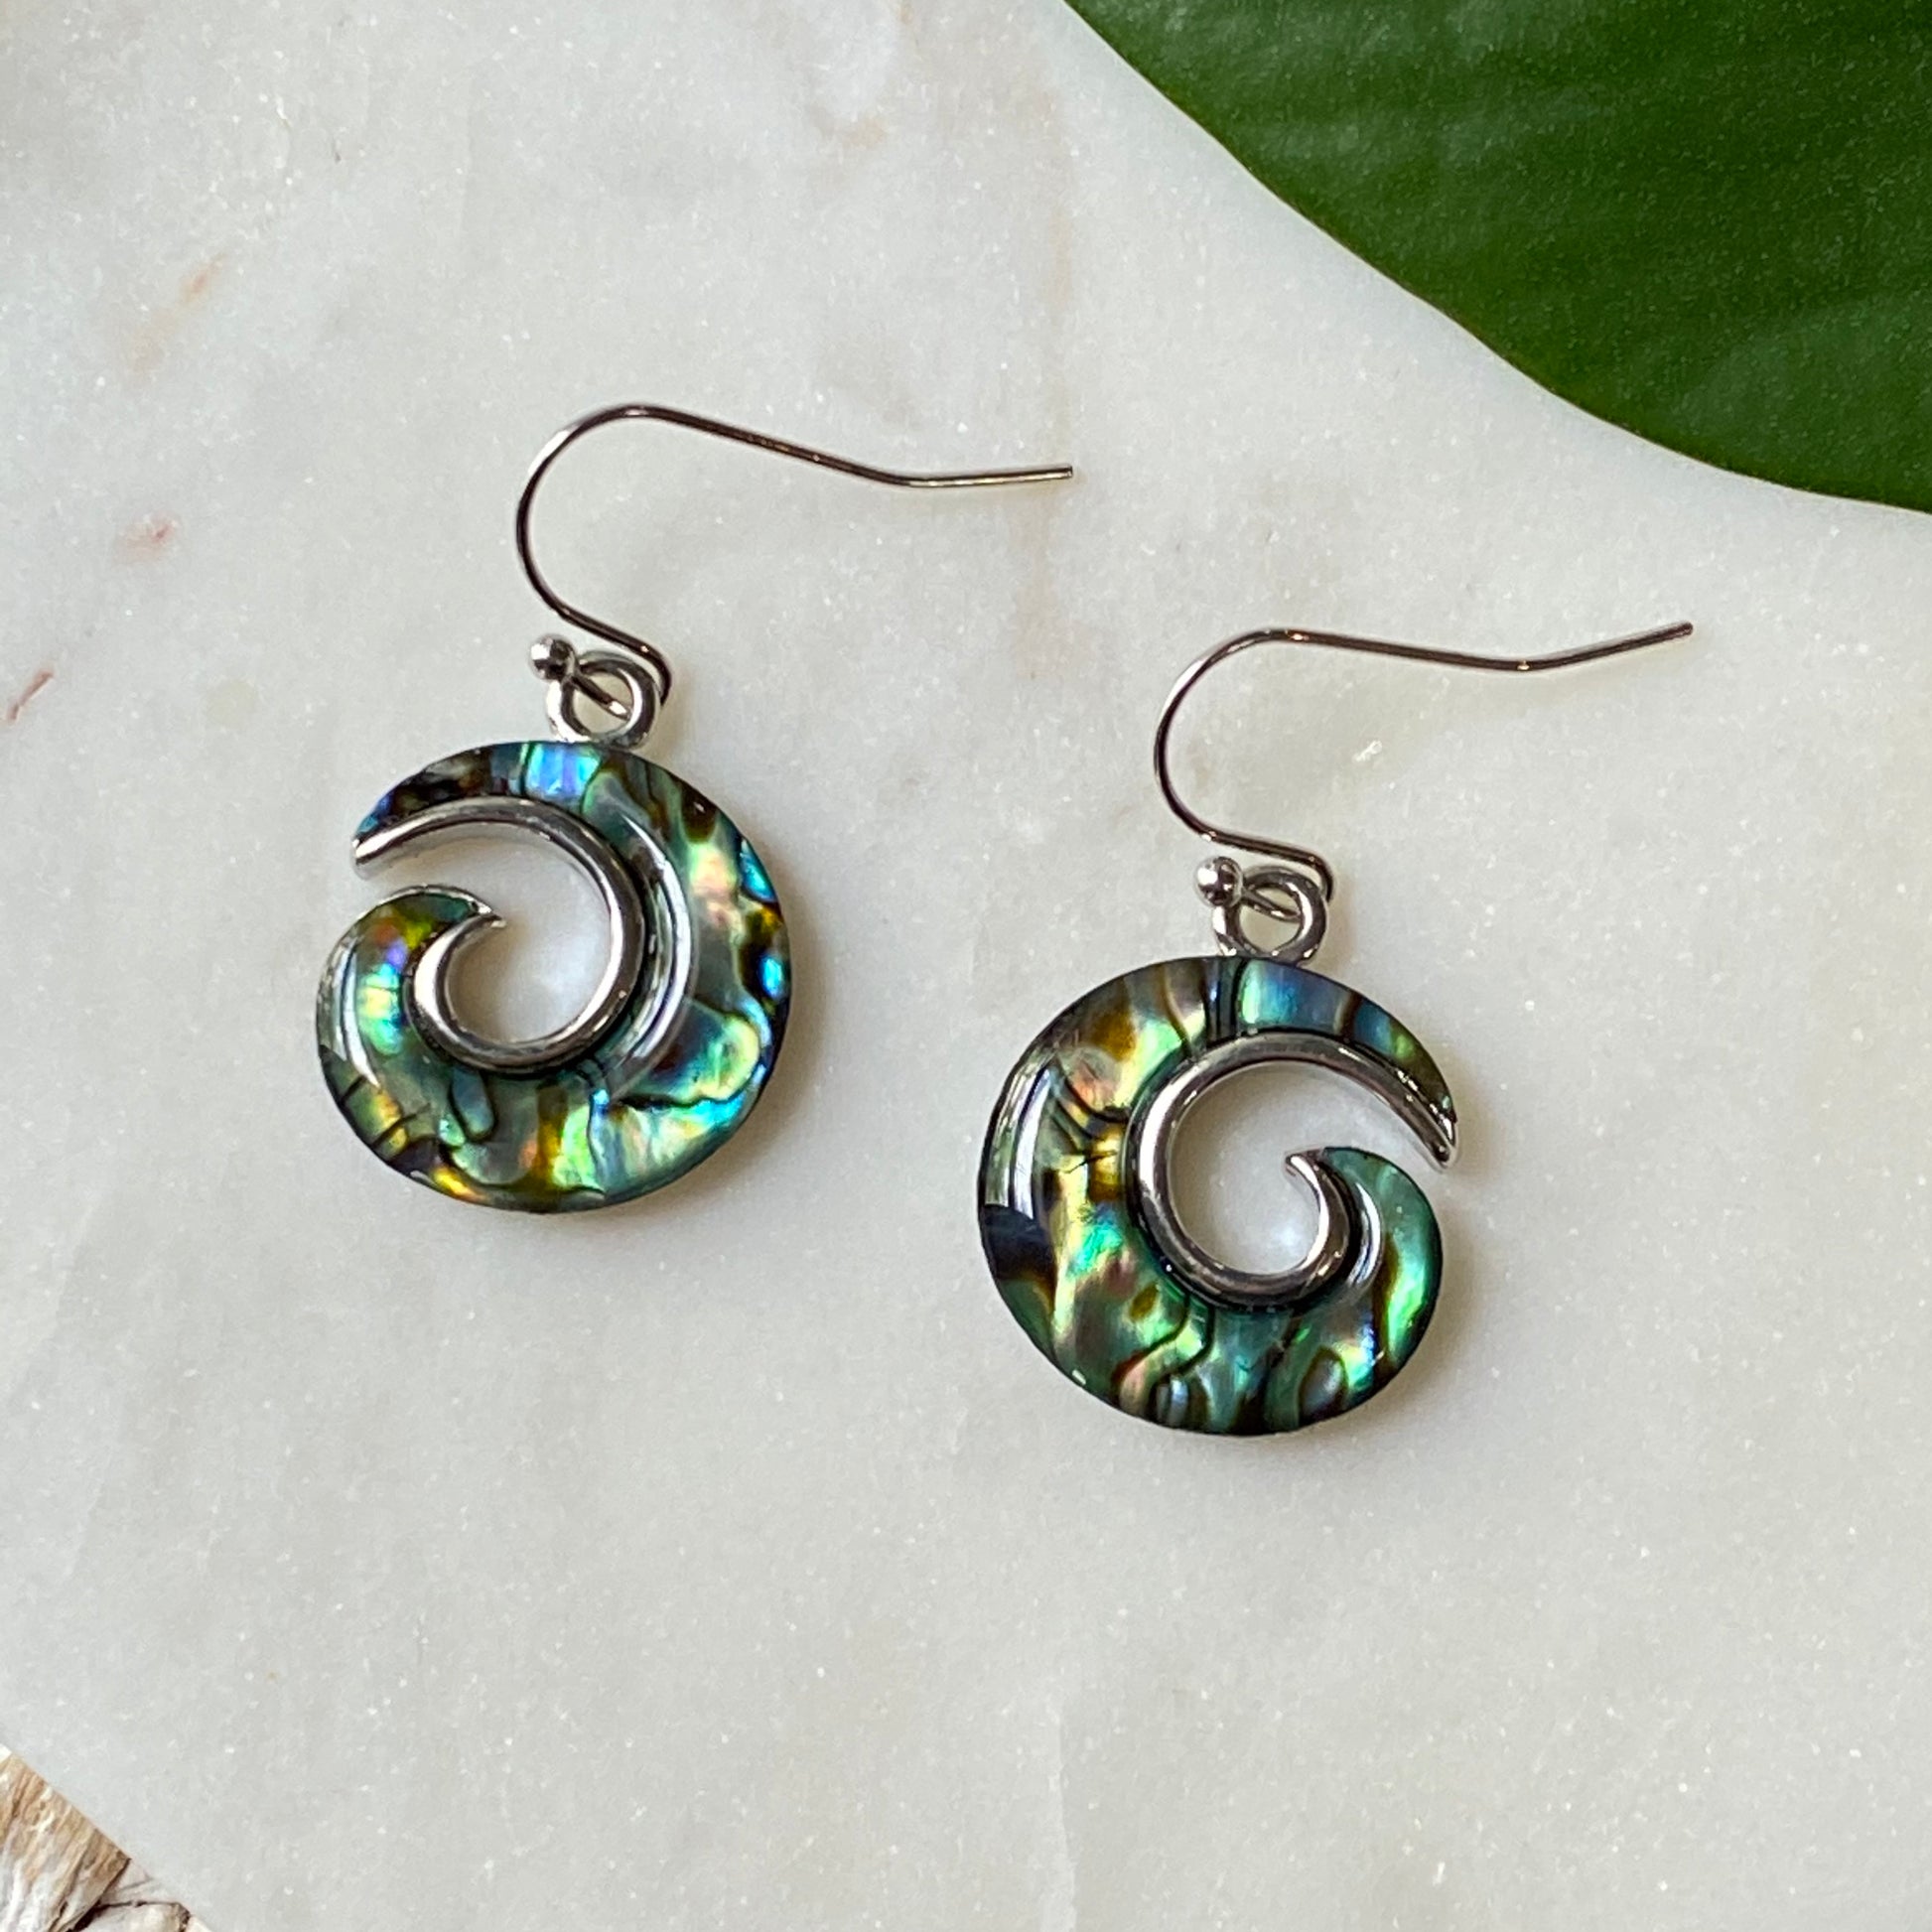 abalone shell swirl earrings on hooks